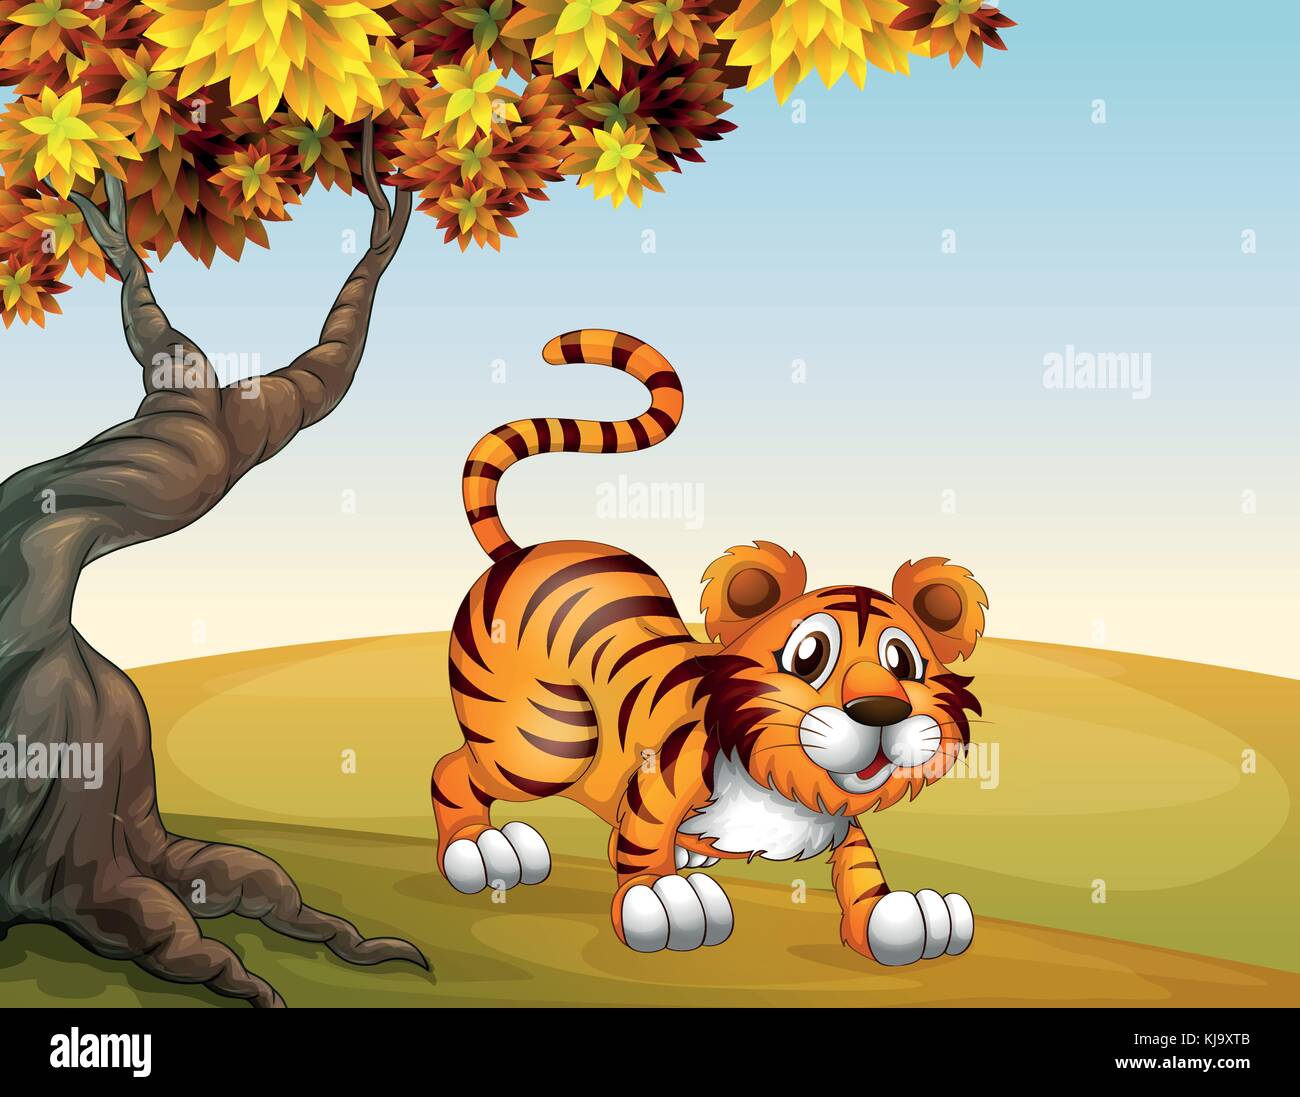 Ilustración de un tigre en una posición de salto cerca del árbol grande Ilustración del Vector